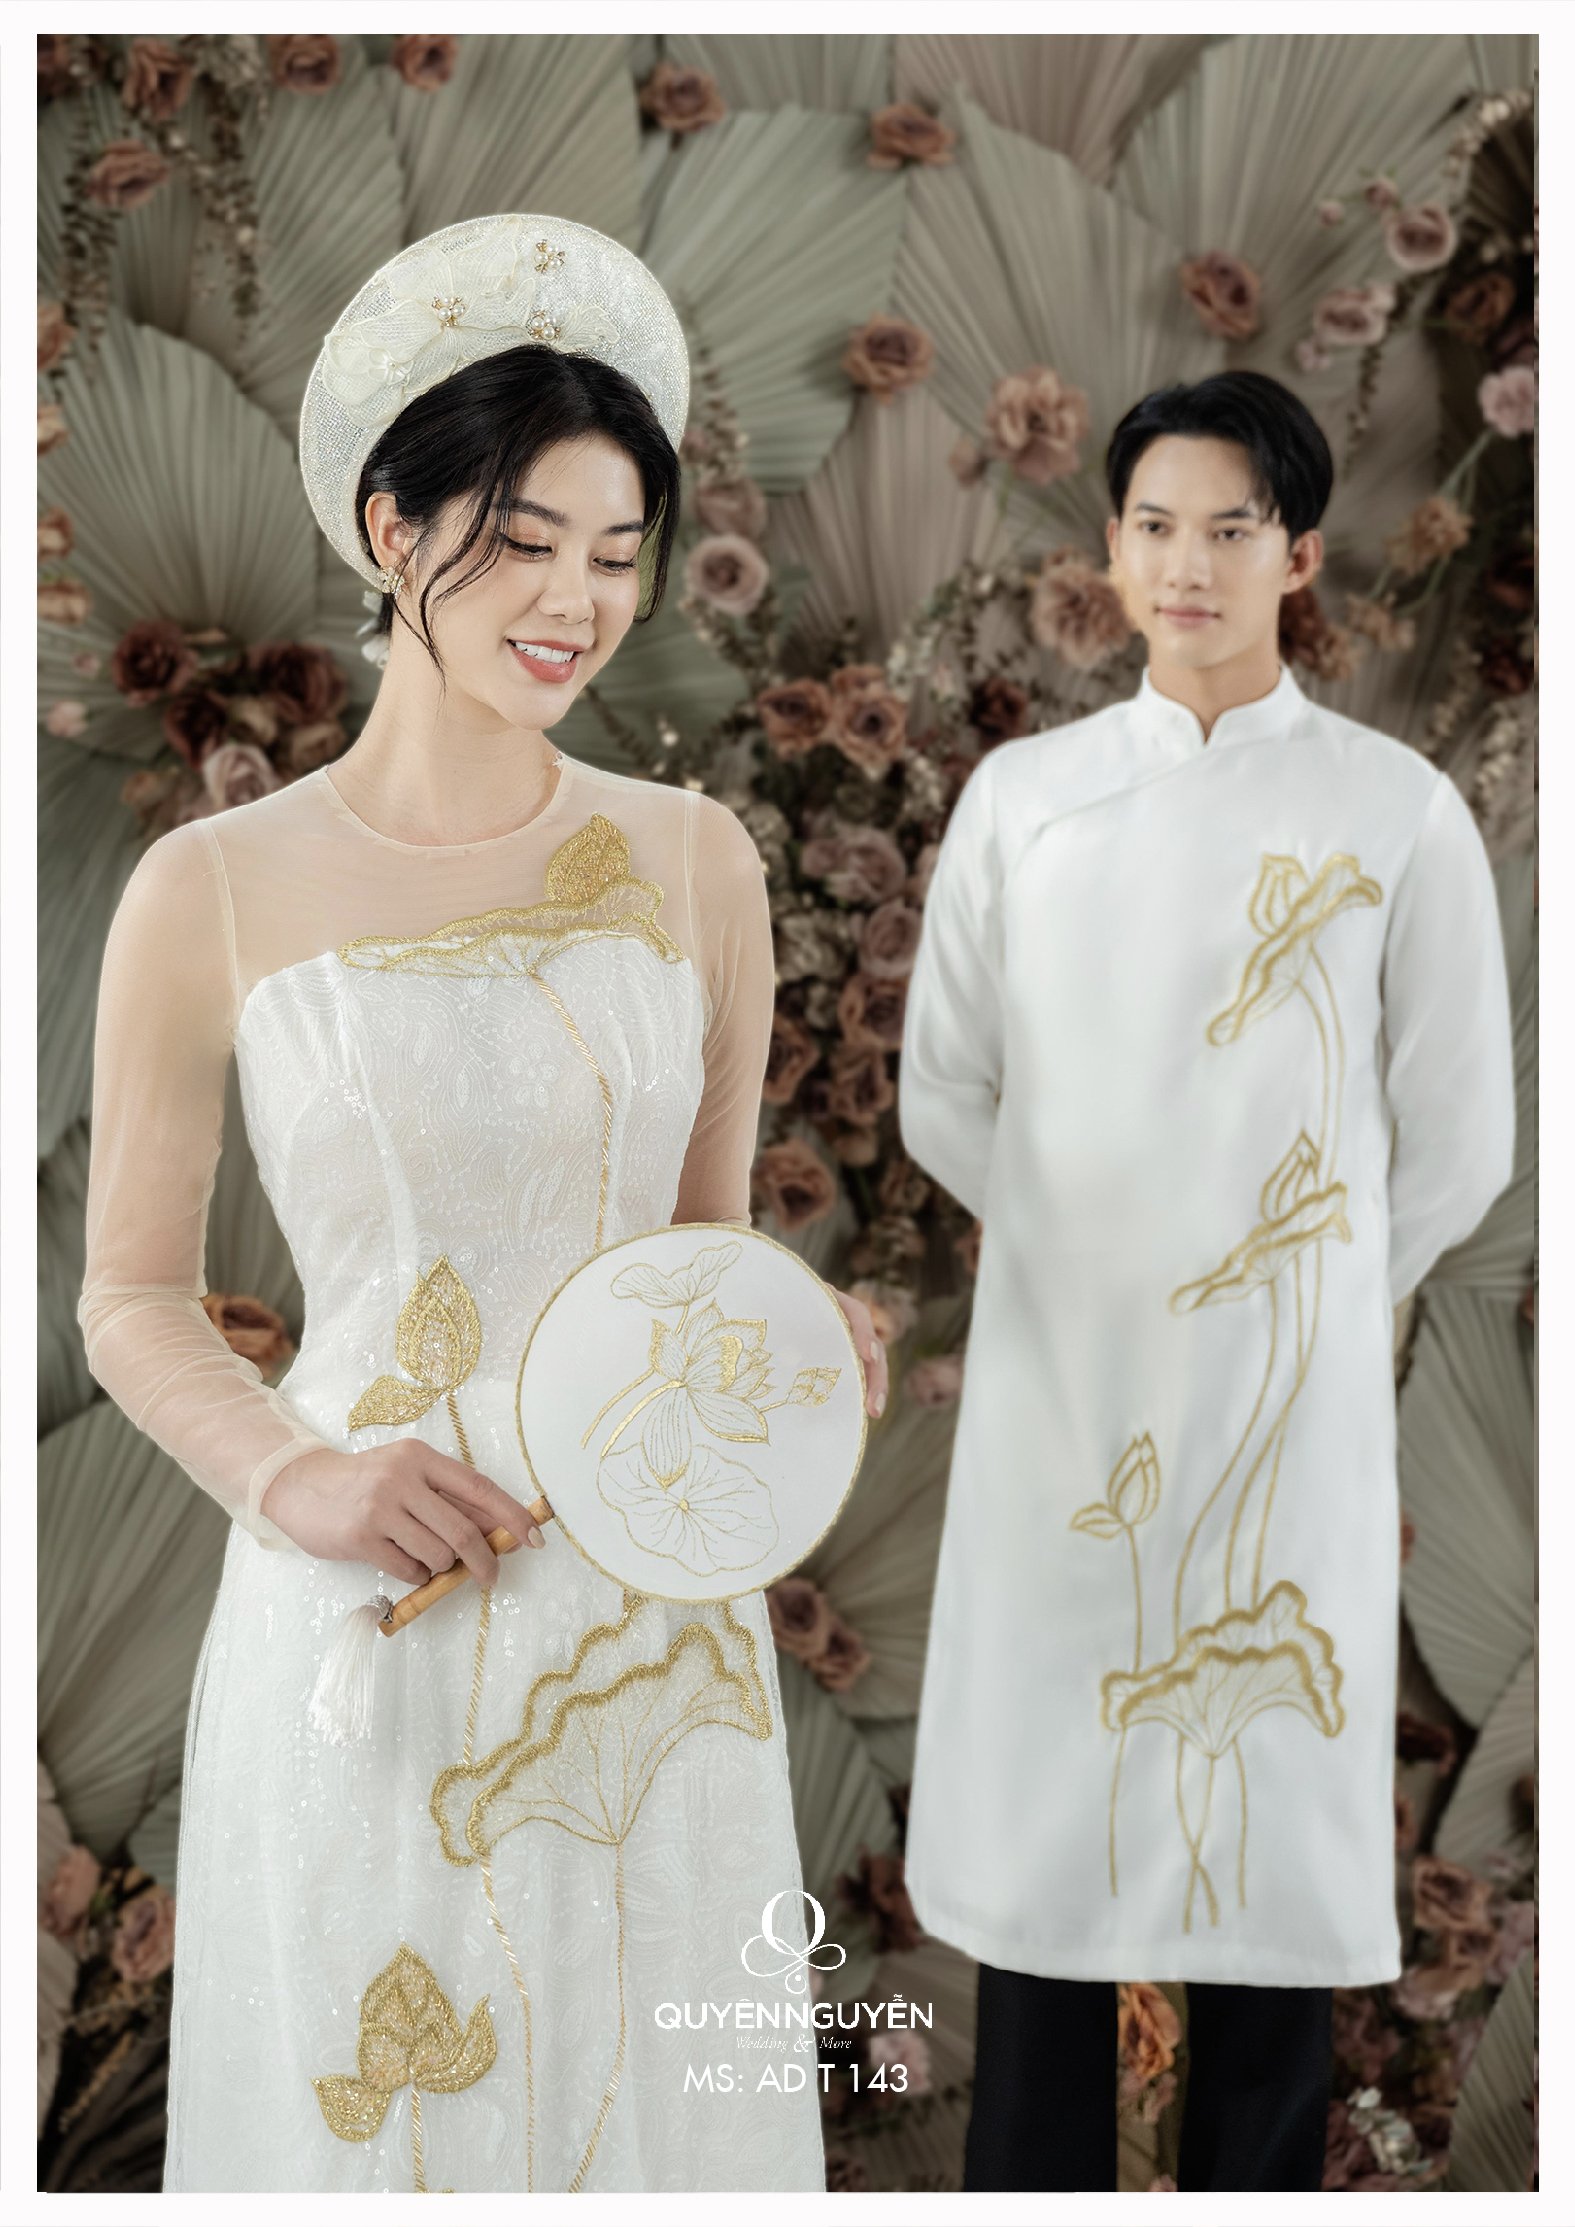 Quyên Nguyễn Bridal | Dịch Vụ May, Bán Và Cho Thuê Váy Cưới, Áo Dài Uy Tín  Tại Hà Nội